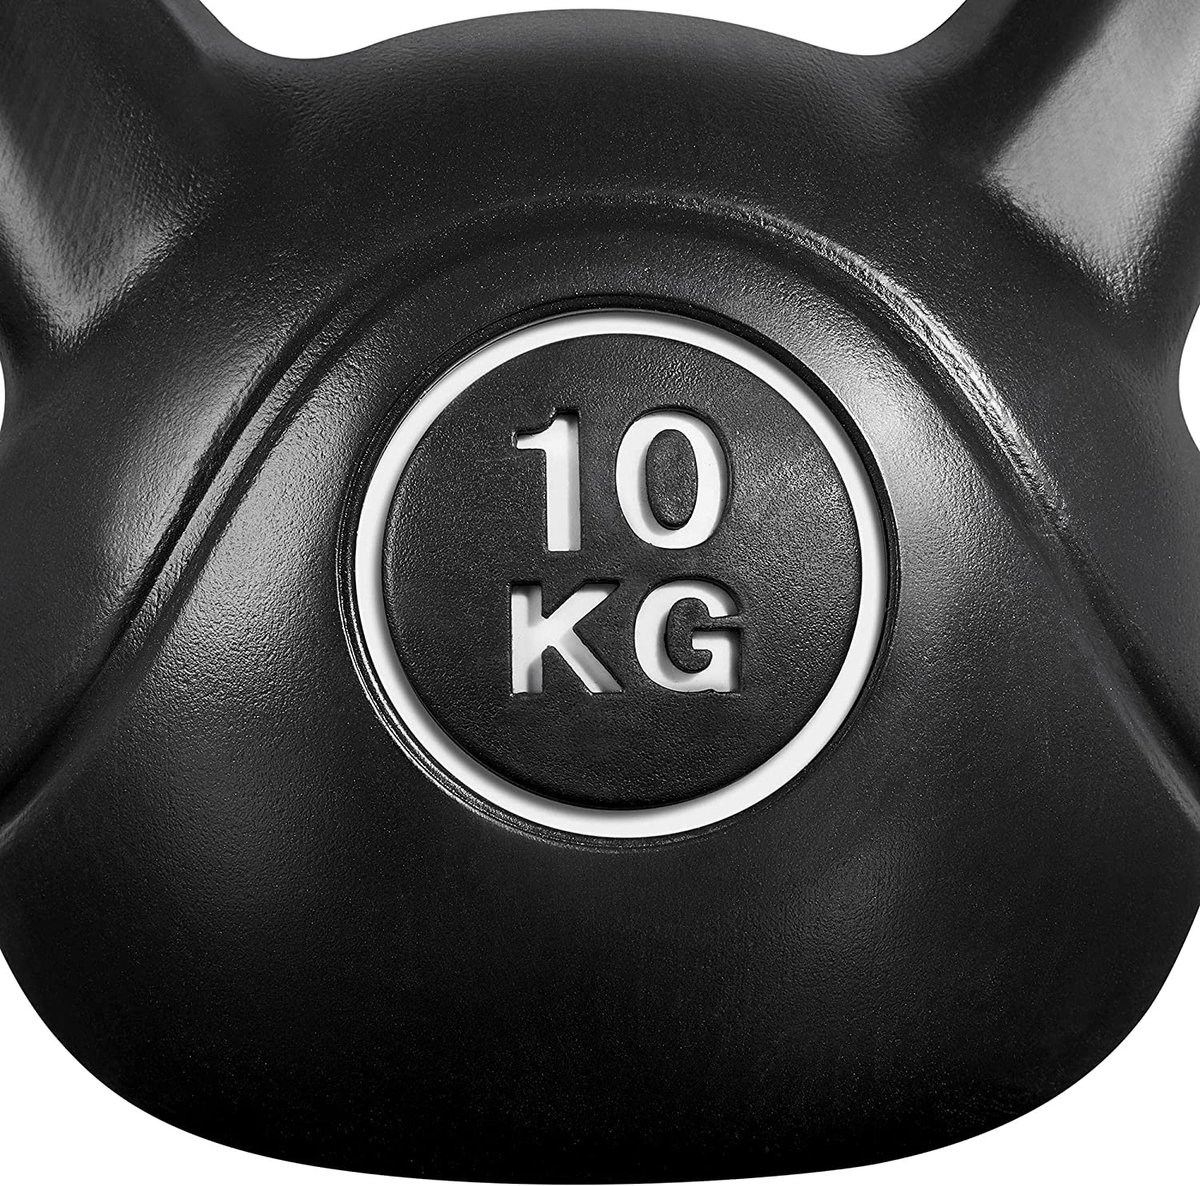 Kettlebell, 10 kg, gewichten, voor krachttraining, fitness, gymnastiek, kogelgewicht, gewicht HM-YAHEE-592045